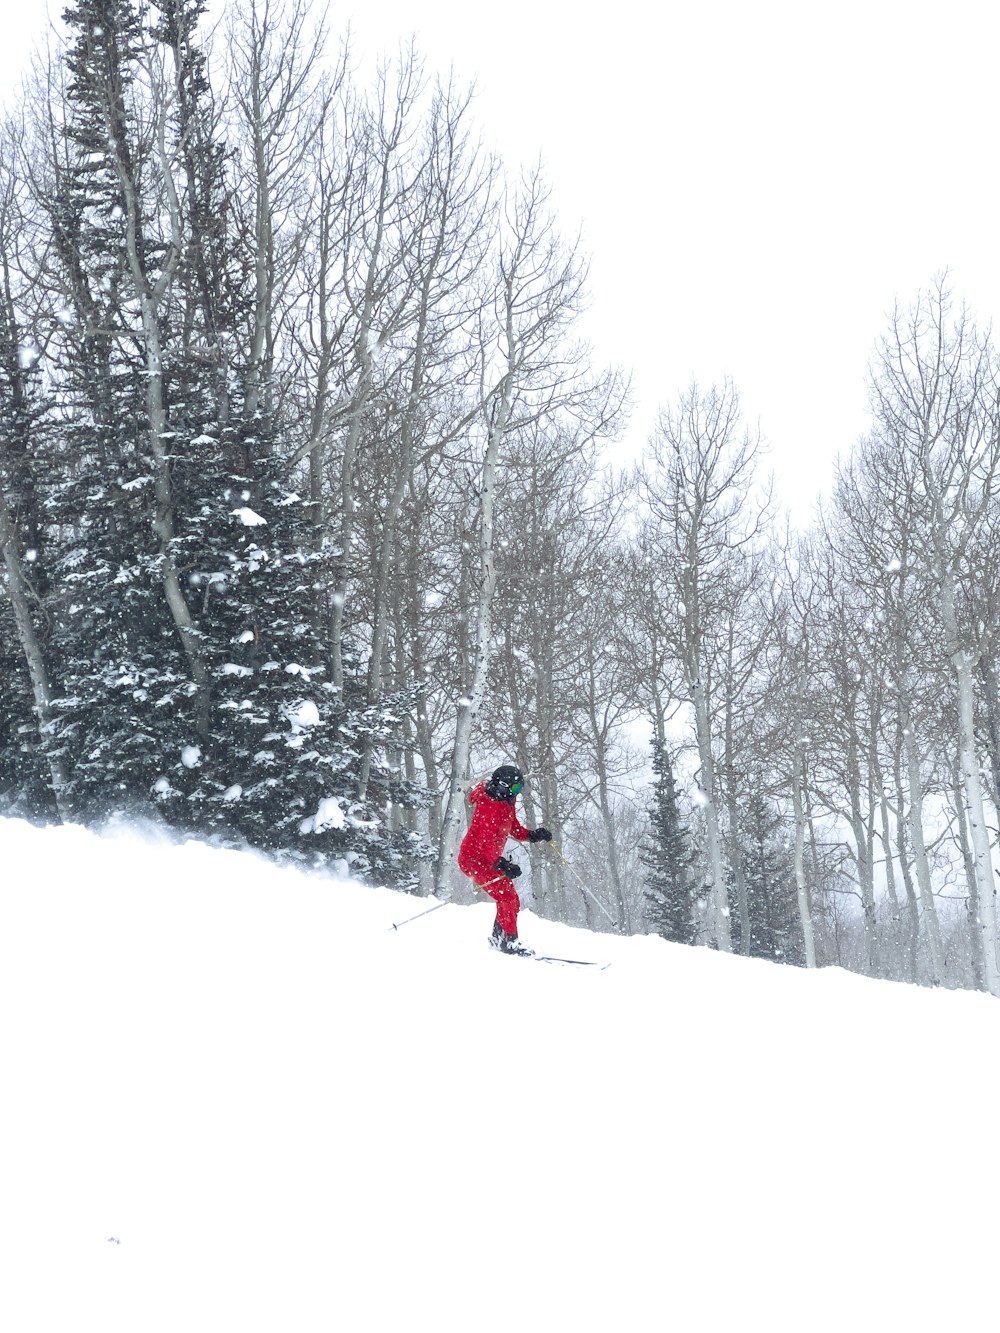 눈 덮인 언덕을 스키를 타는 사람